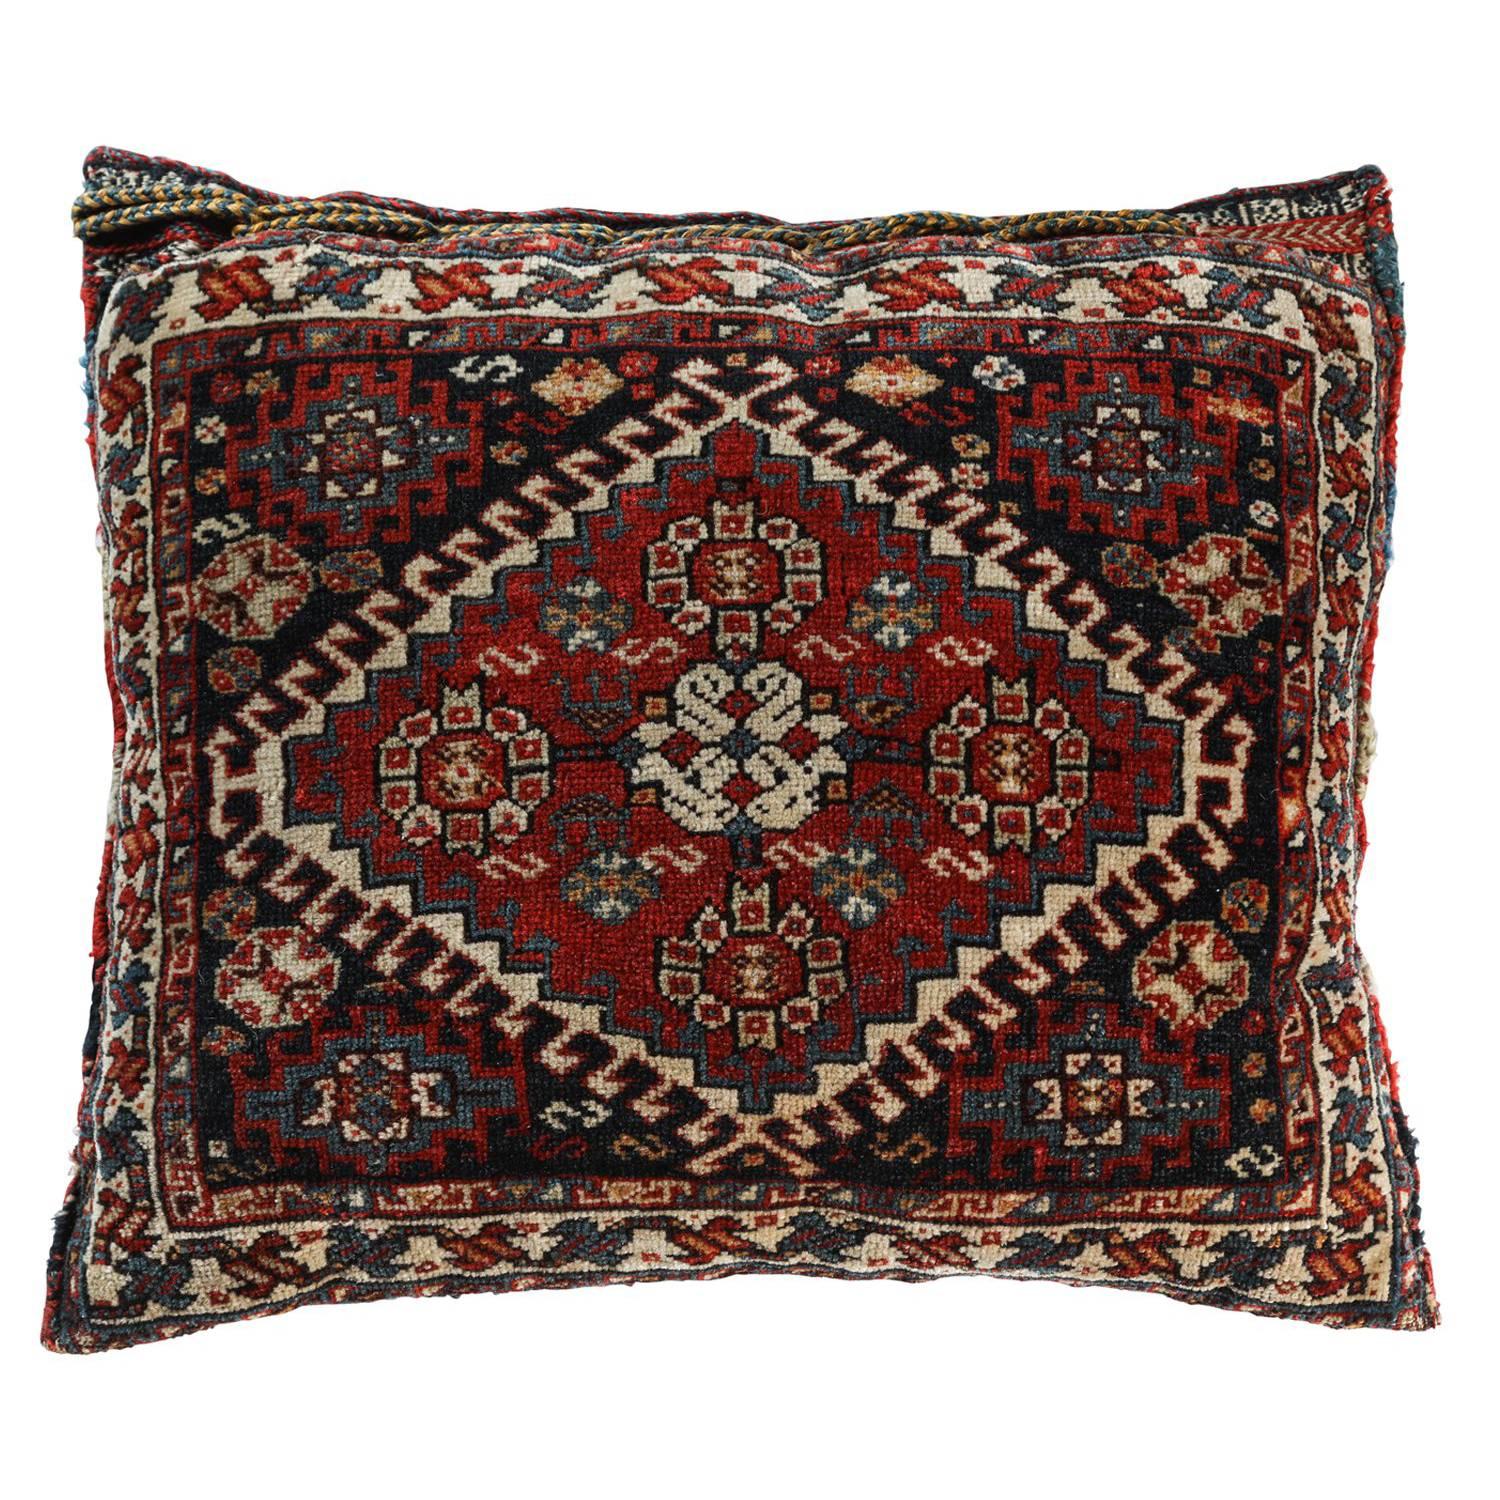  Antique Southwest Persian Saddle Bag Pillow For Sale